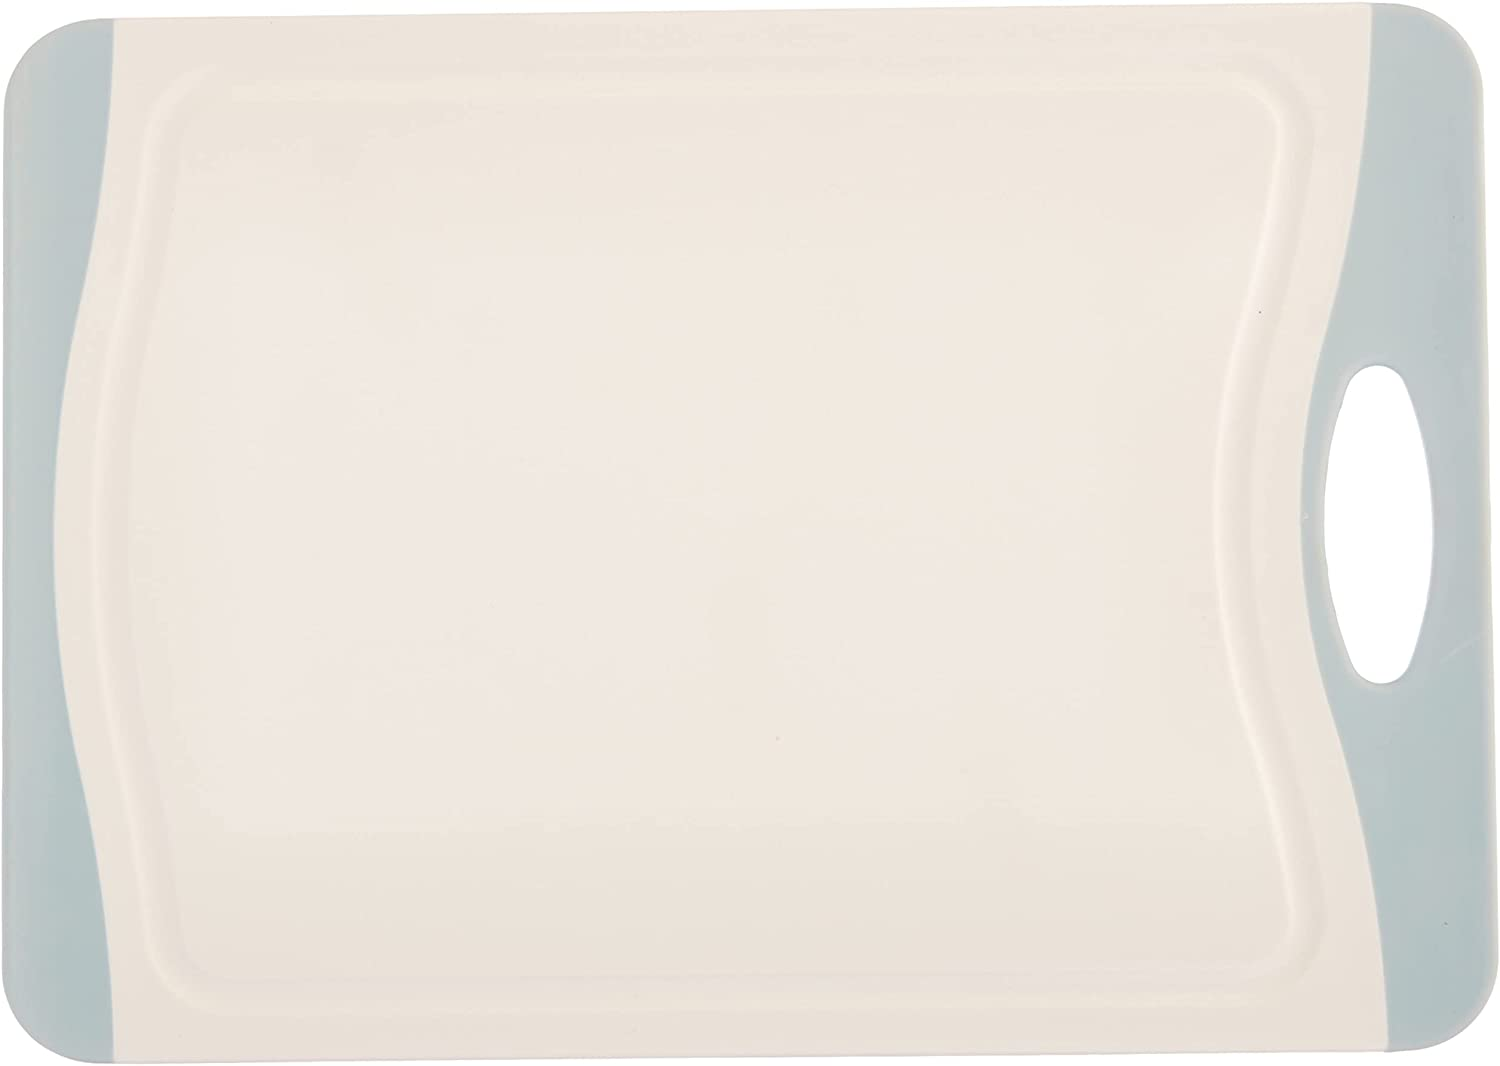 Schneidebrett Easy M - Küchenbrett, Schneidbrett mit Saftrille und Griff, antibakteriell, Polypropylen, 28.5 x 1 x 20 cm, Weiß